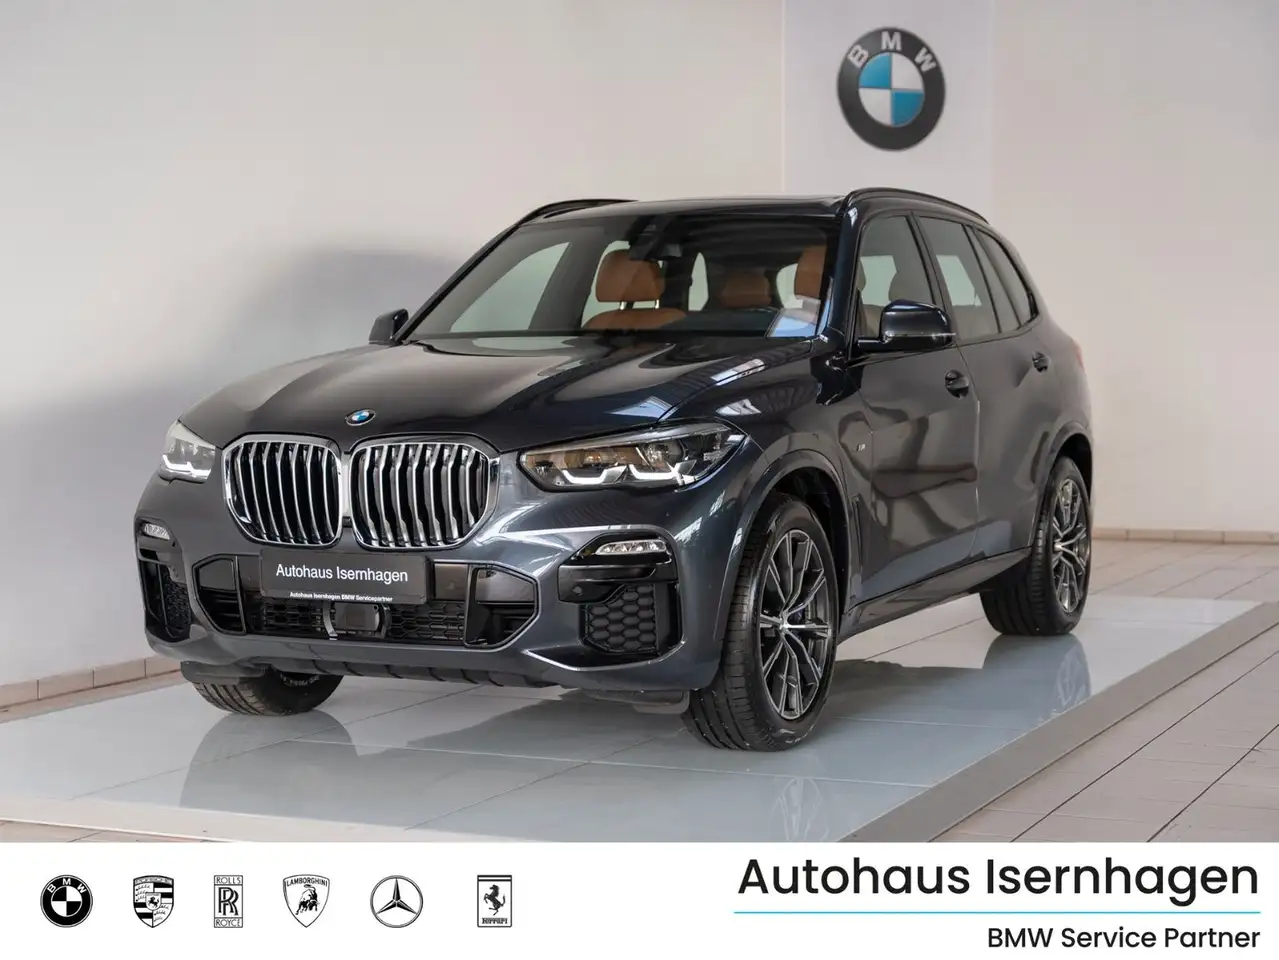 BMW X5 SUV/4x4/Pick-up in Grijs tweedehands in Isernhagen voor € 58.499,-